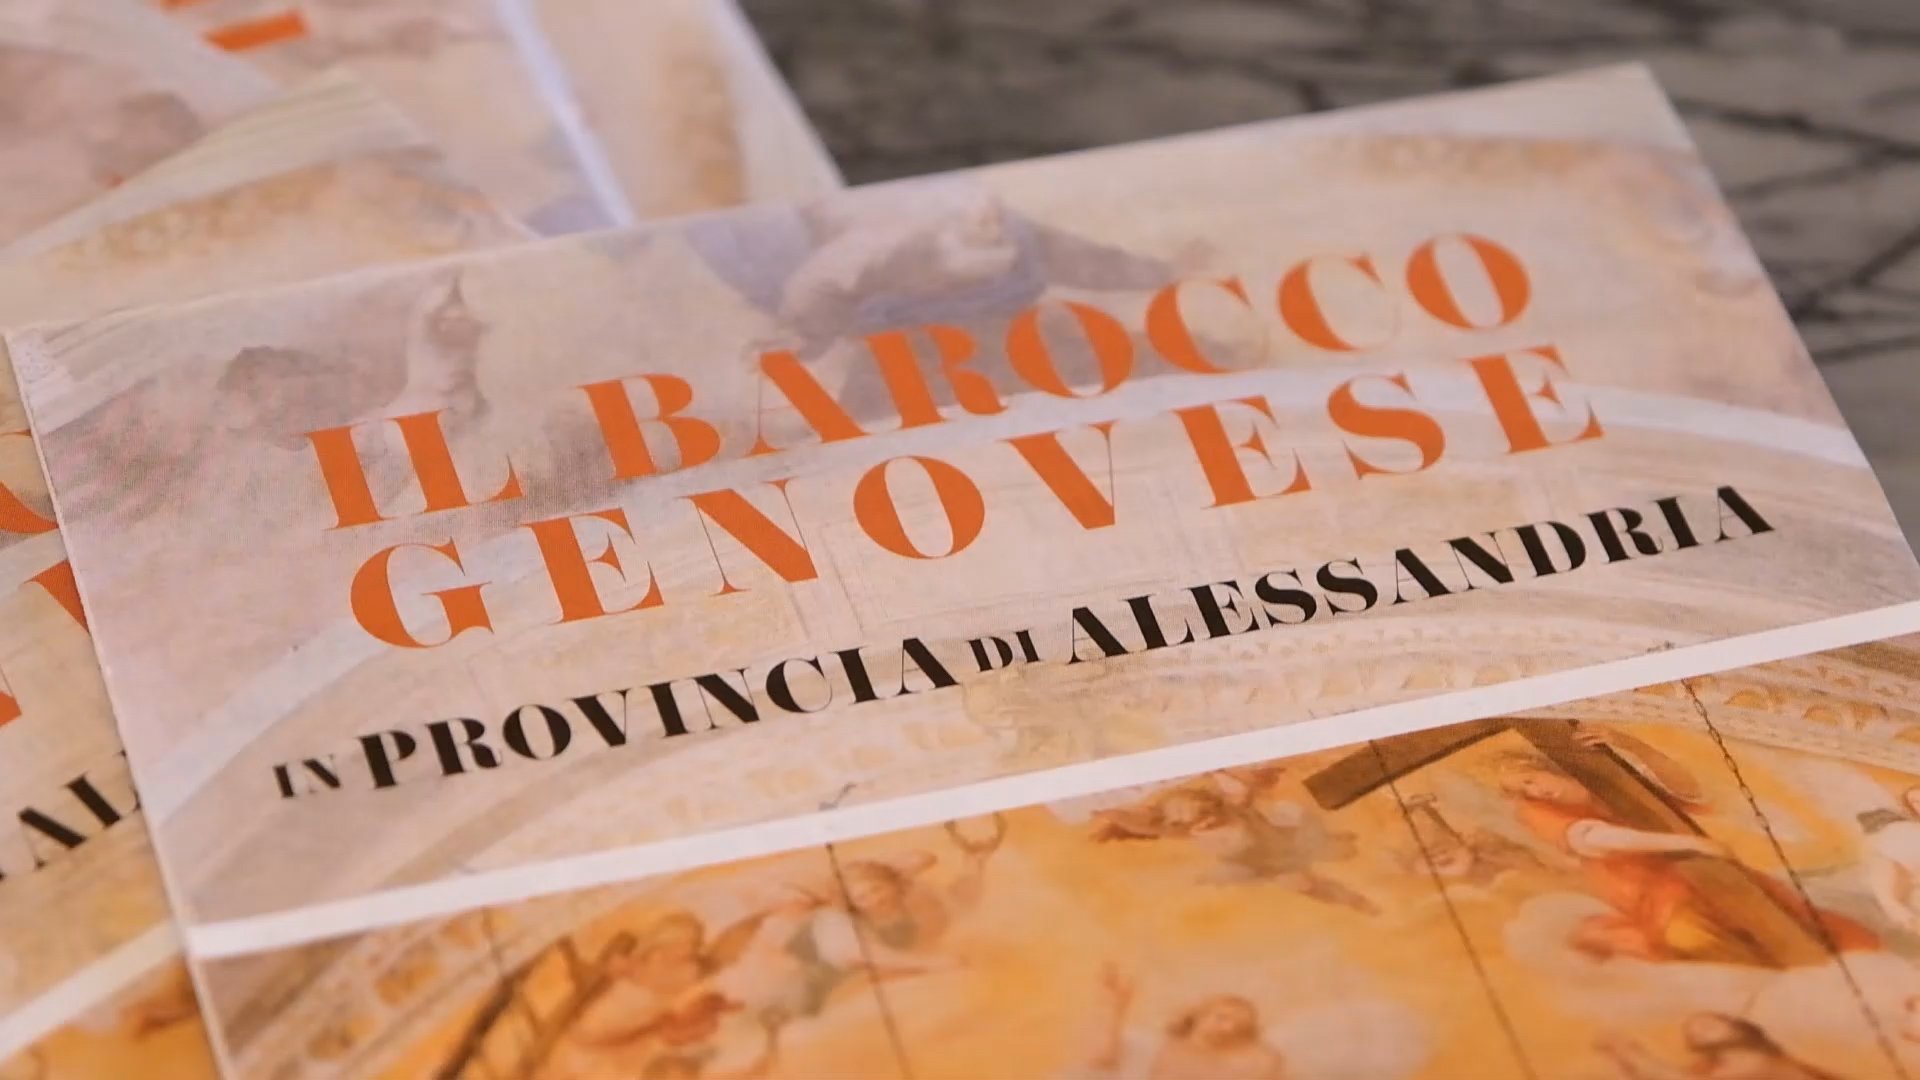 Presentata la carta tematica “Il Barocco Genovese in provincia di Alessandria”